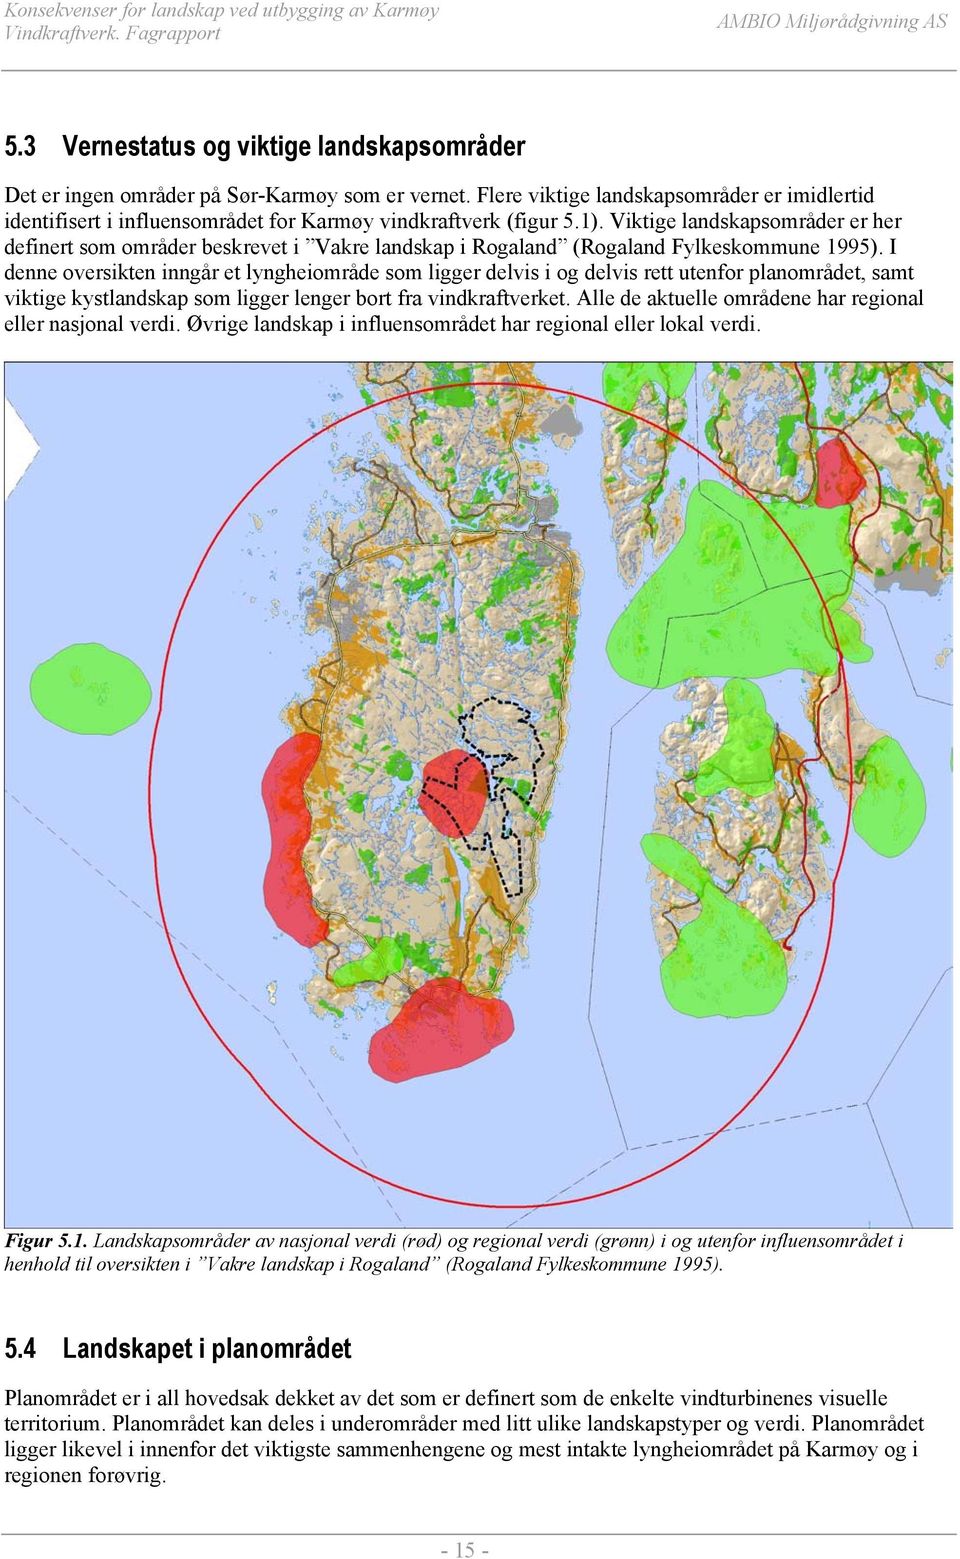 Viktige landskapsområder er her definert som områder beskrevet i Vakre landskap i Rogaland (Rogaland Fylkeskommune 1995).